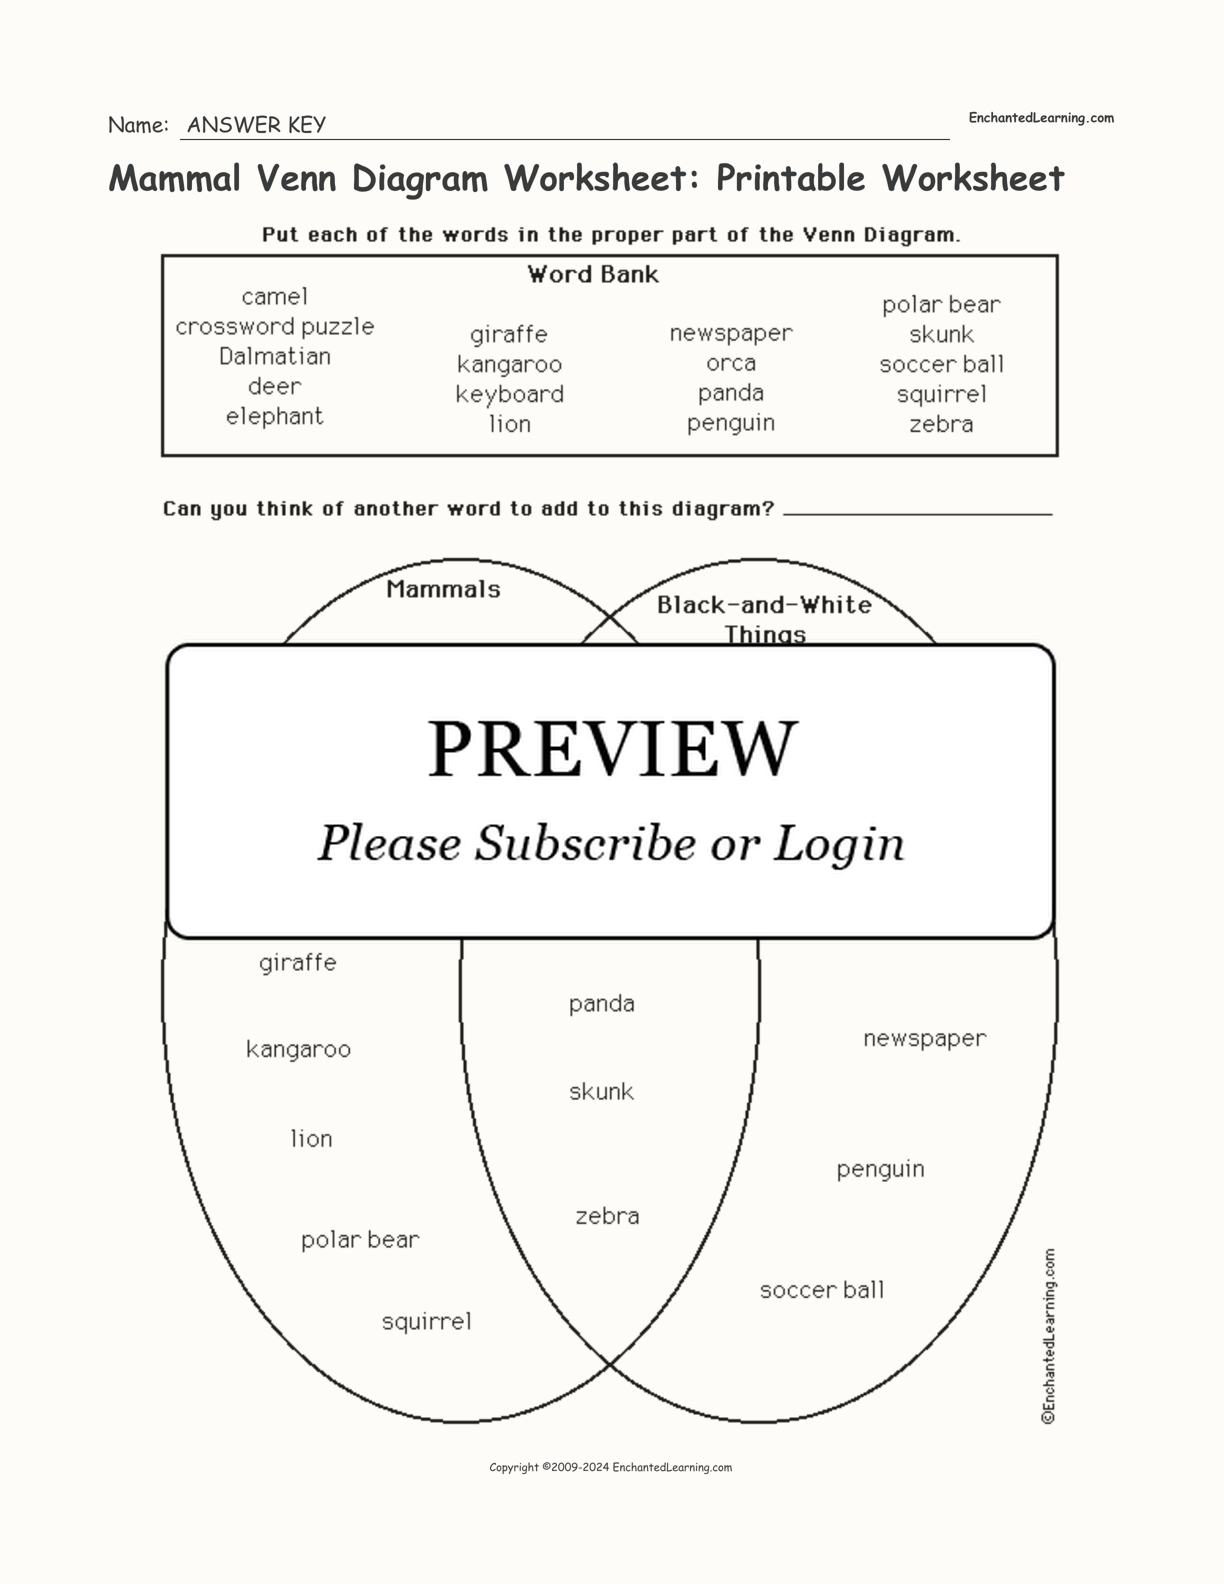 Mammal Venn Diagram Worksheet: Printable Worksheet interactive worksheet page 2